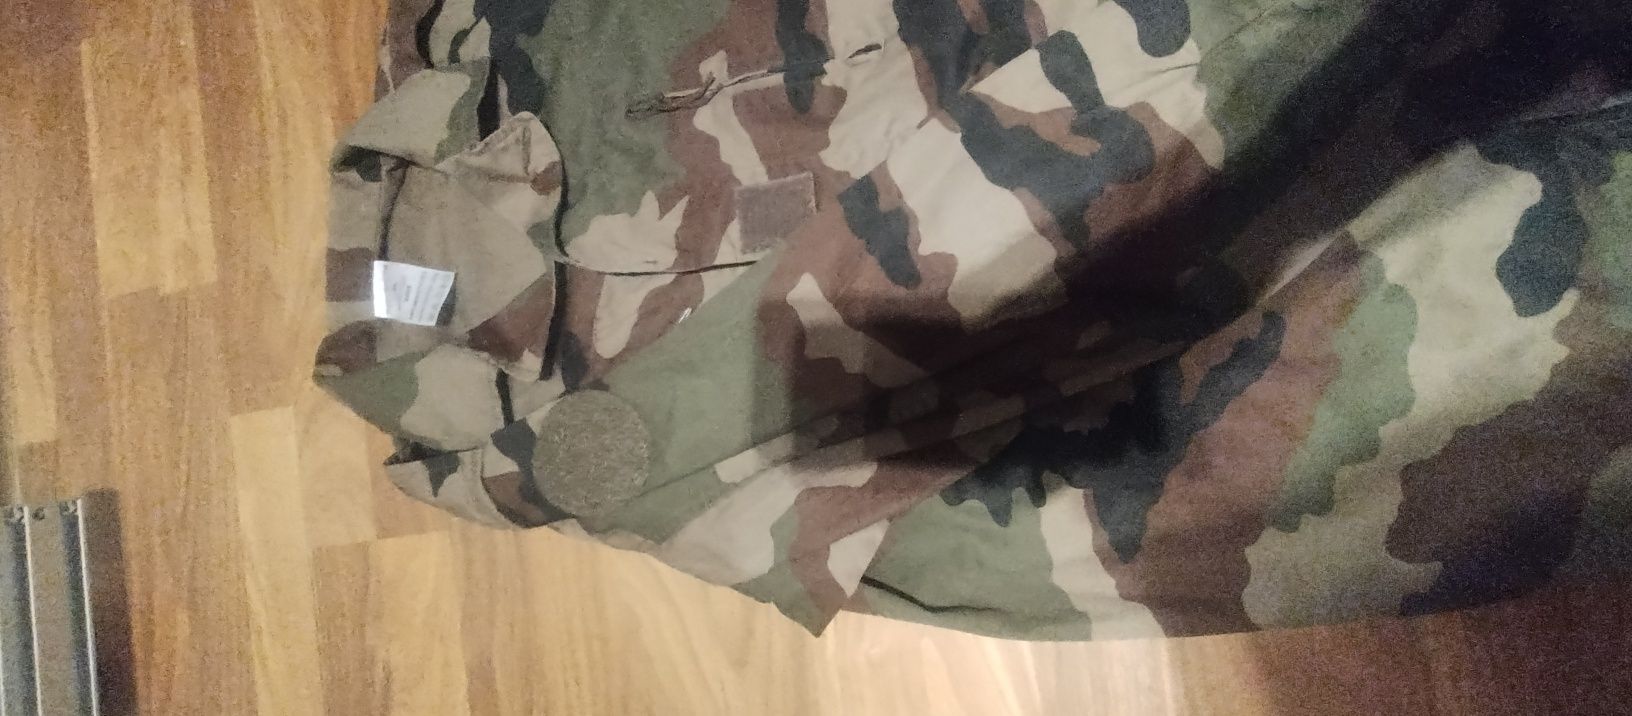 Mundur armii francuskiej F2 CCE spodnie bluza